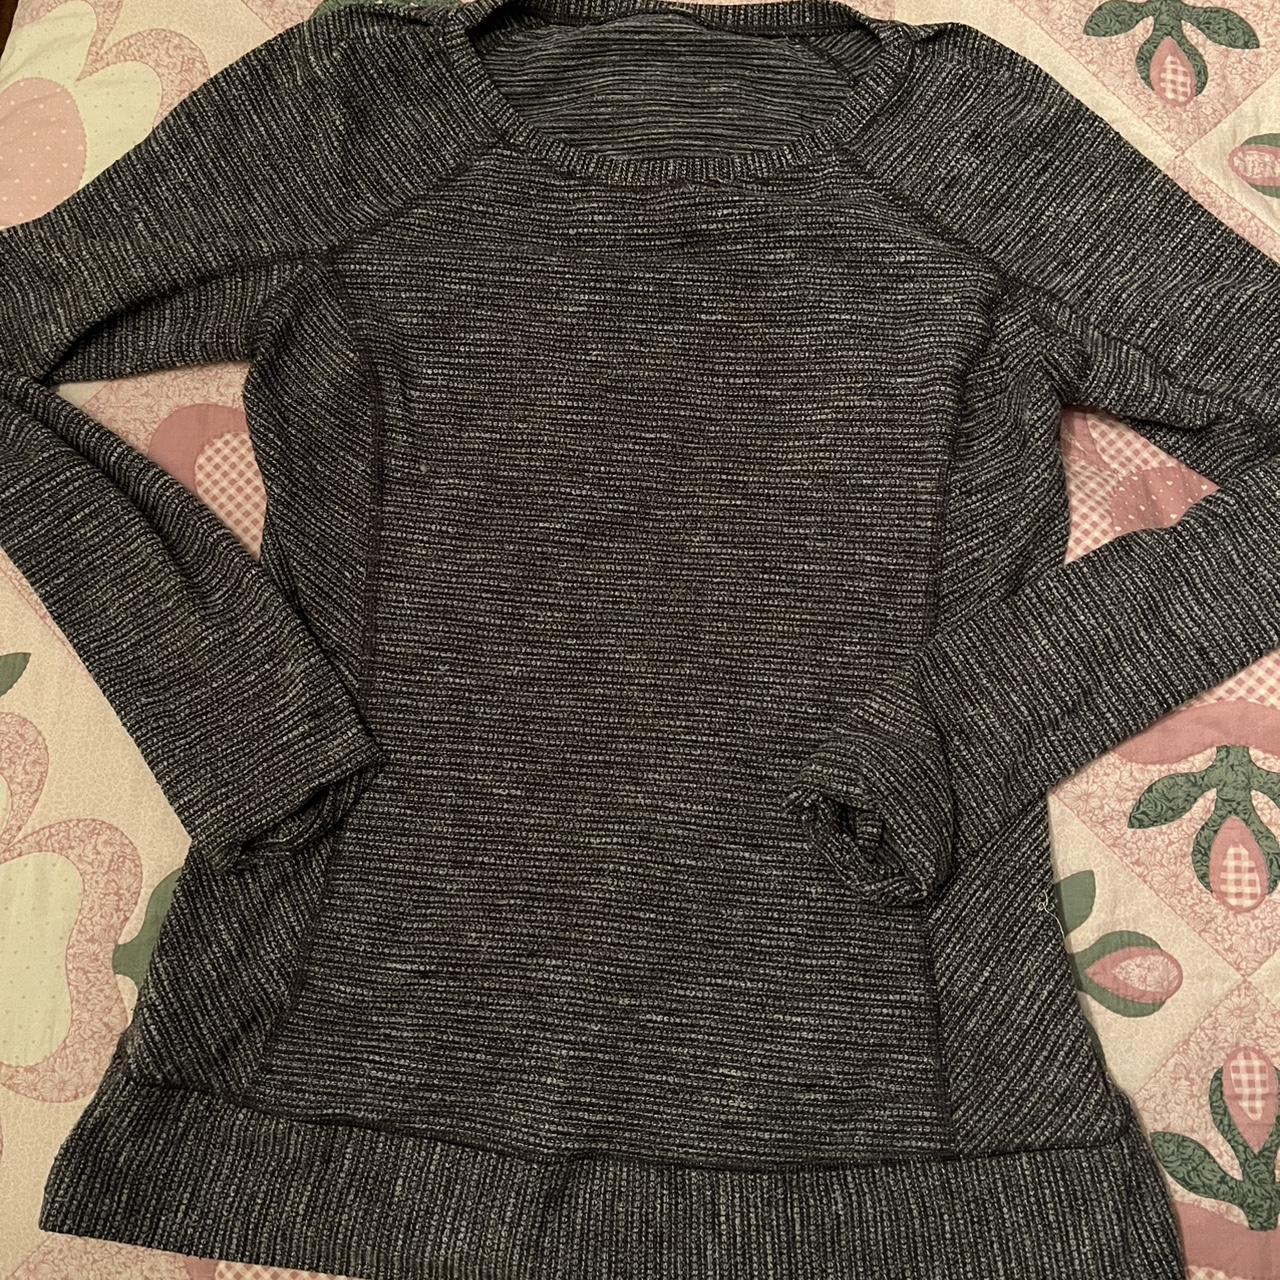 Lululemon Women's Grey Sweatshirt